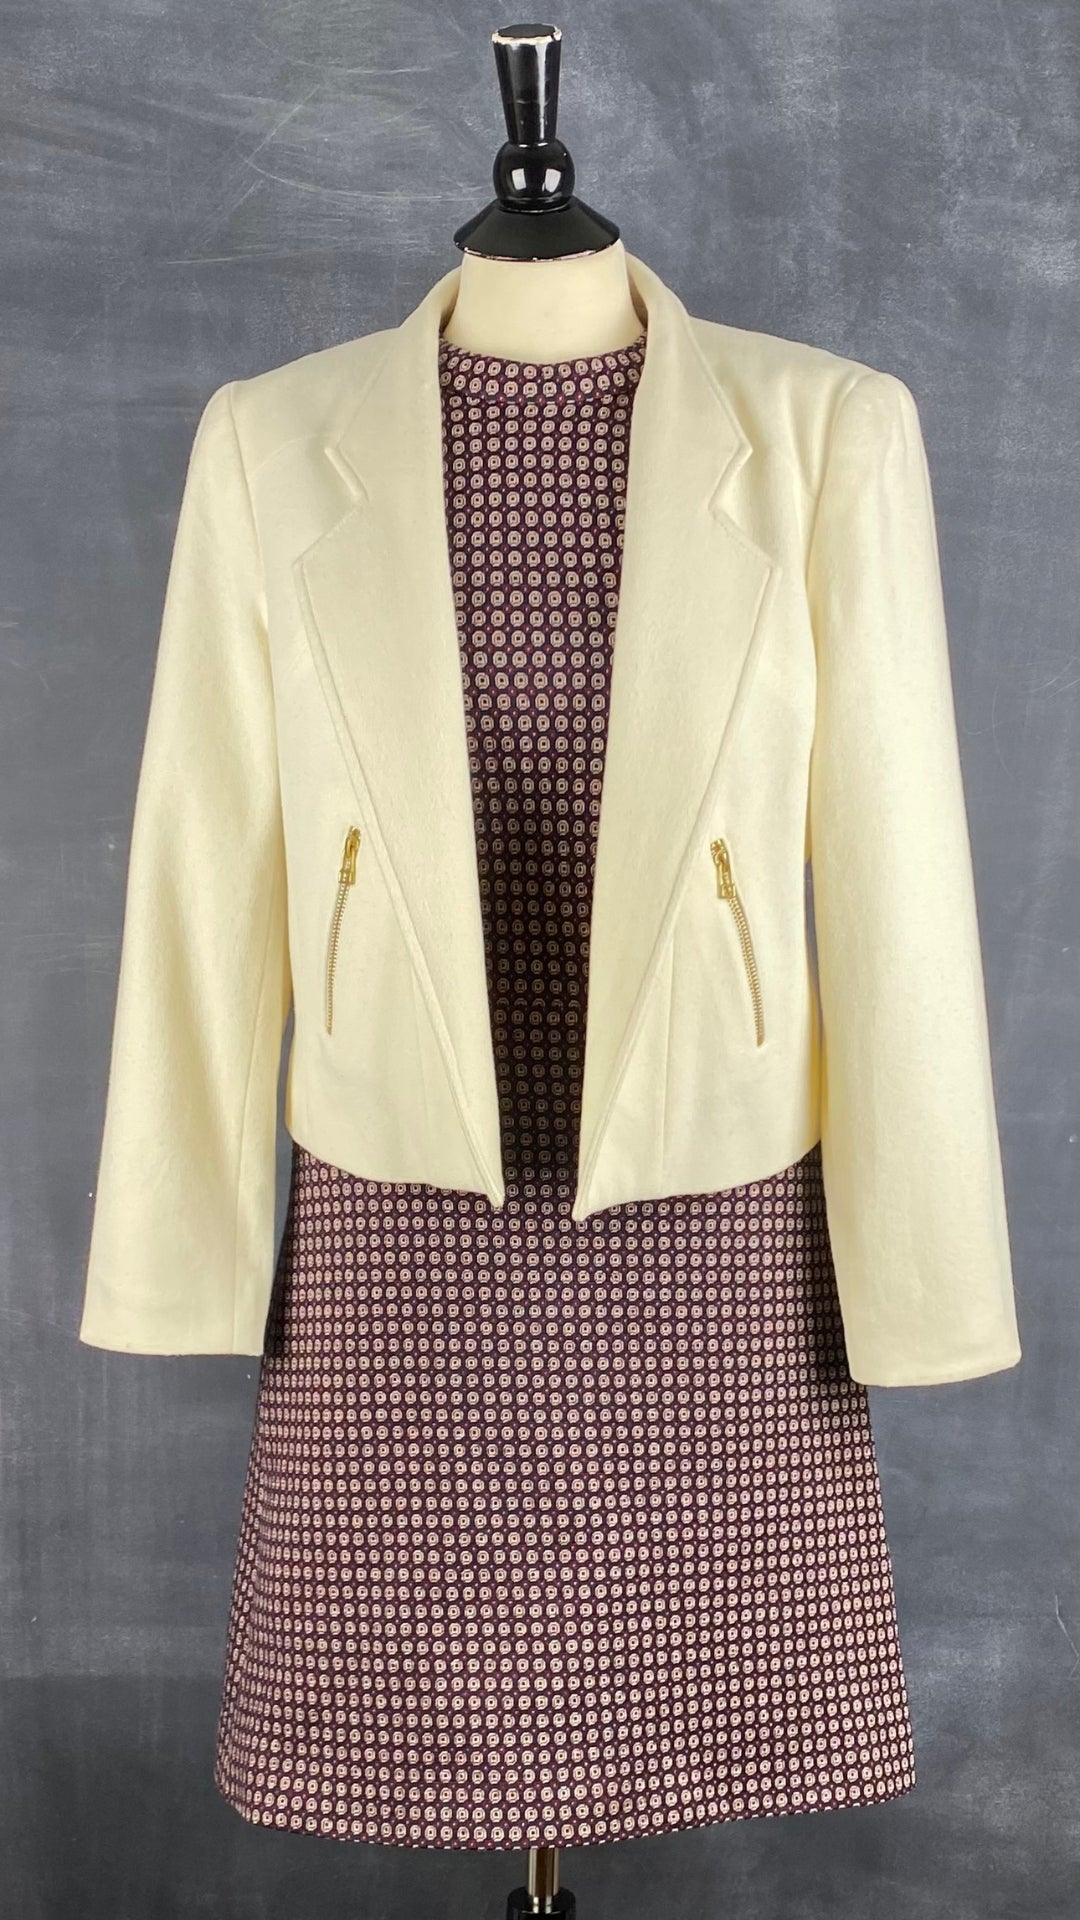 Robe sans manches à motifs Theory, taille 8 (ou 6). Vue de l'agencement avec le blazer crème en laine et cachemire.